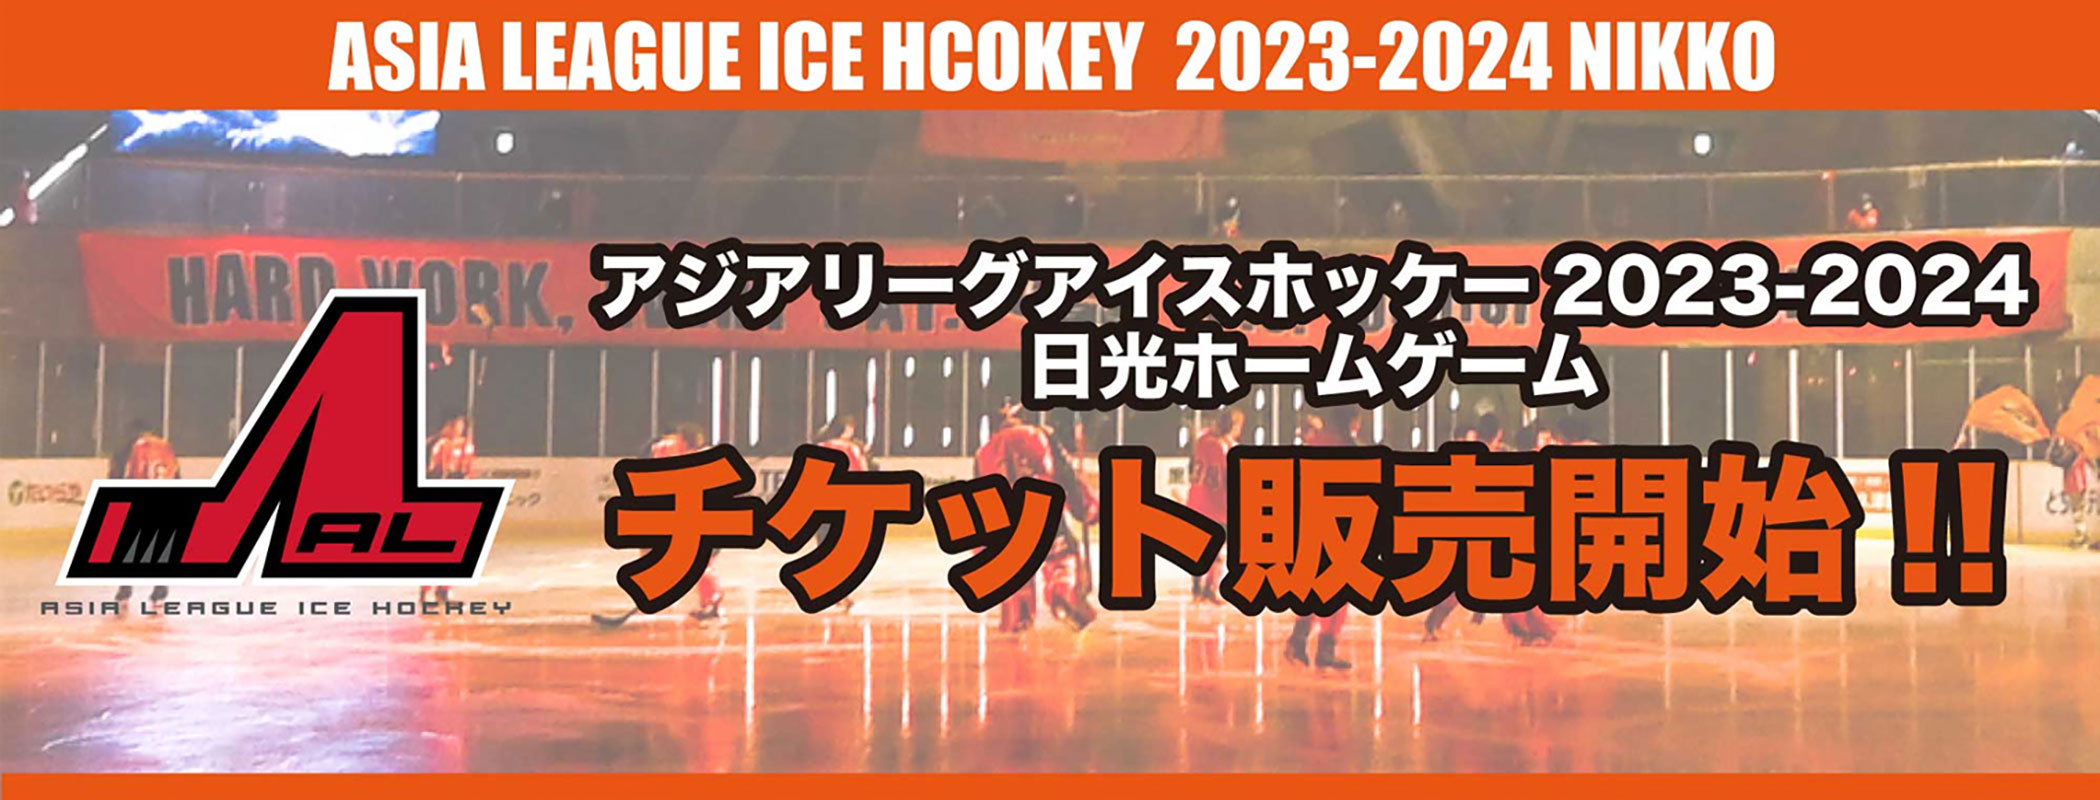 アジアリーグアイスホッケー2023-2024 日光シリーズチケット販売開始